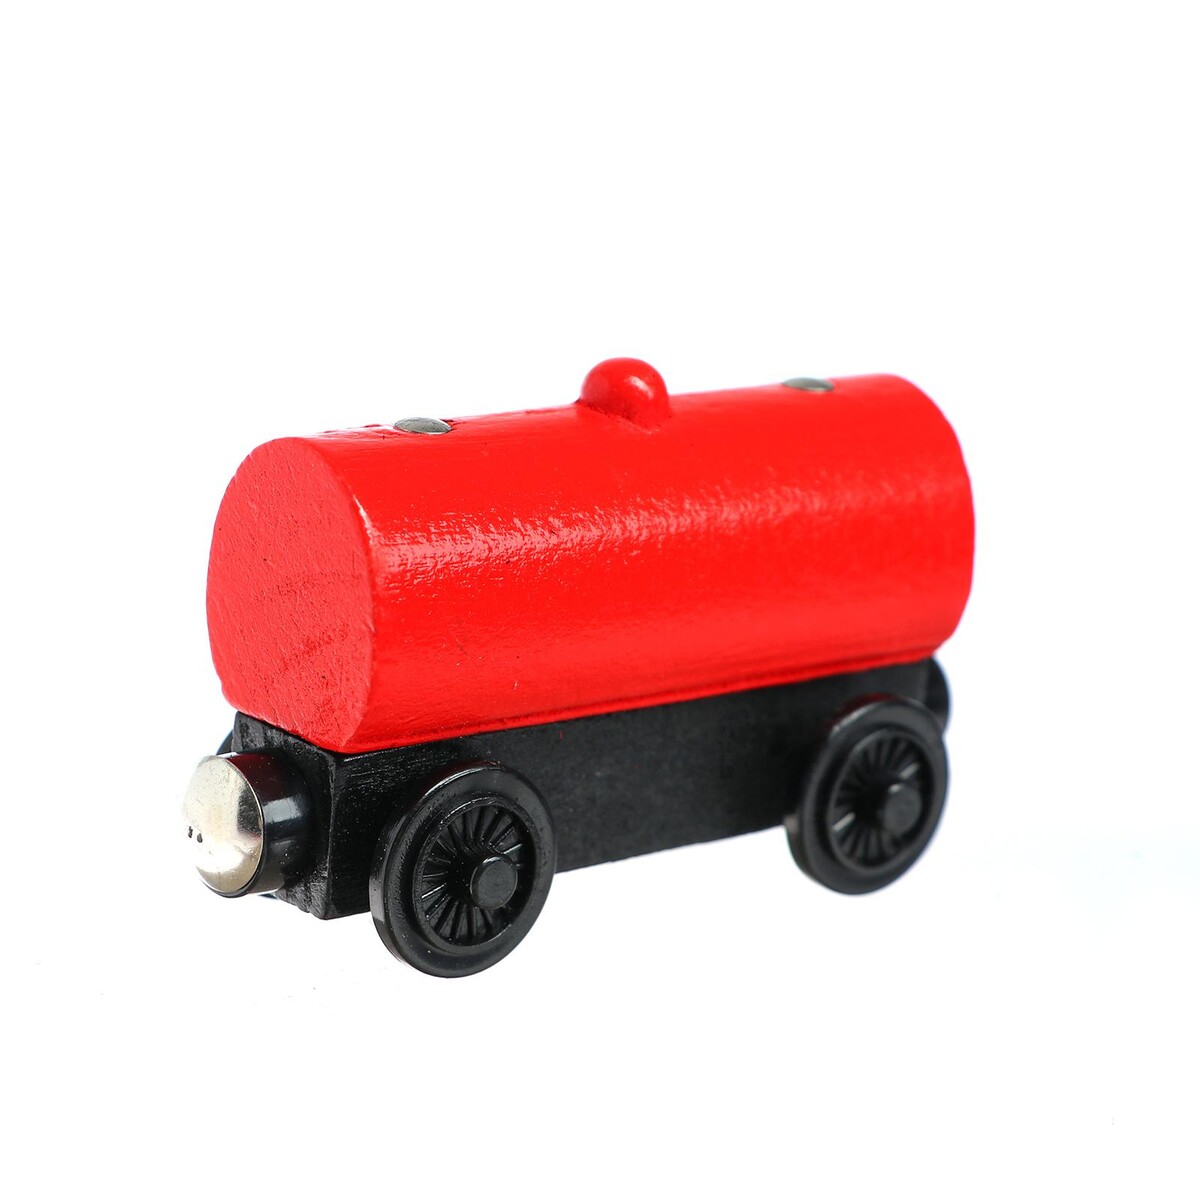 Детский вагончик для железной дороги 3,4×8,5×5,1 см конец дороги